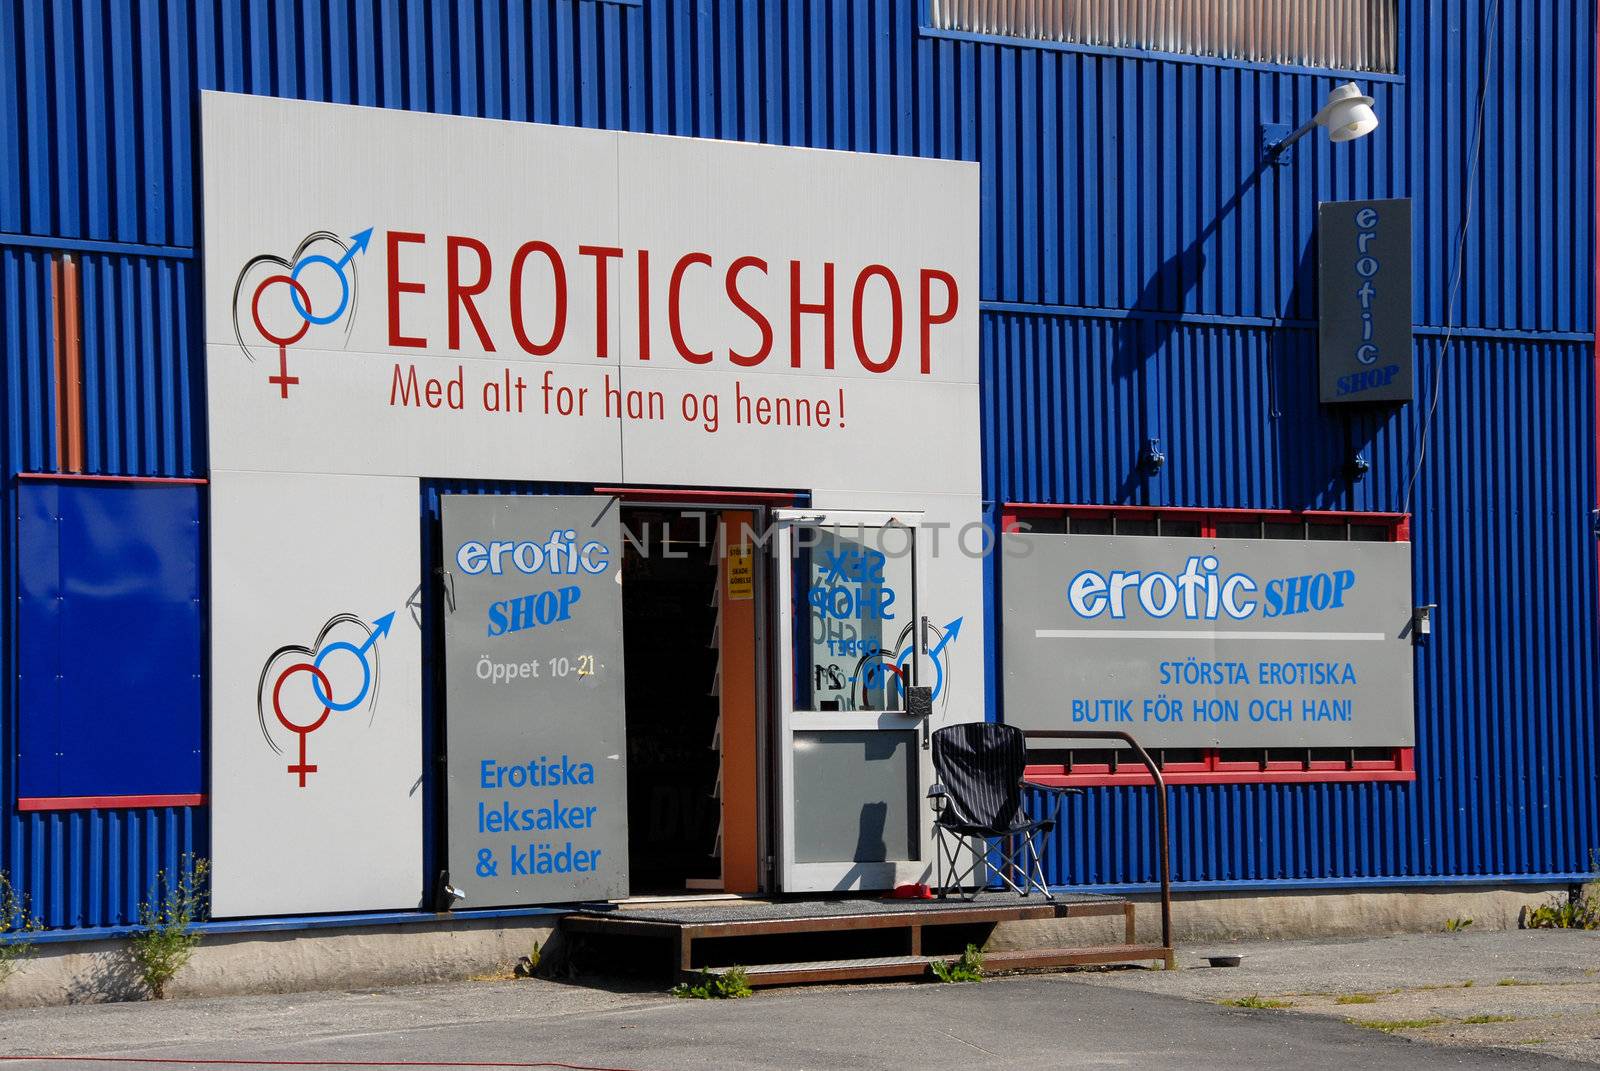 Grensehandel. Svinesund, marknaden. (old Svinesund)
Erotic Shop.
Sweden 2008. 